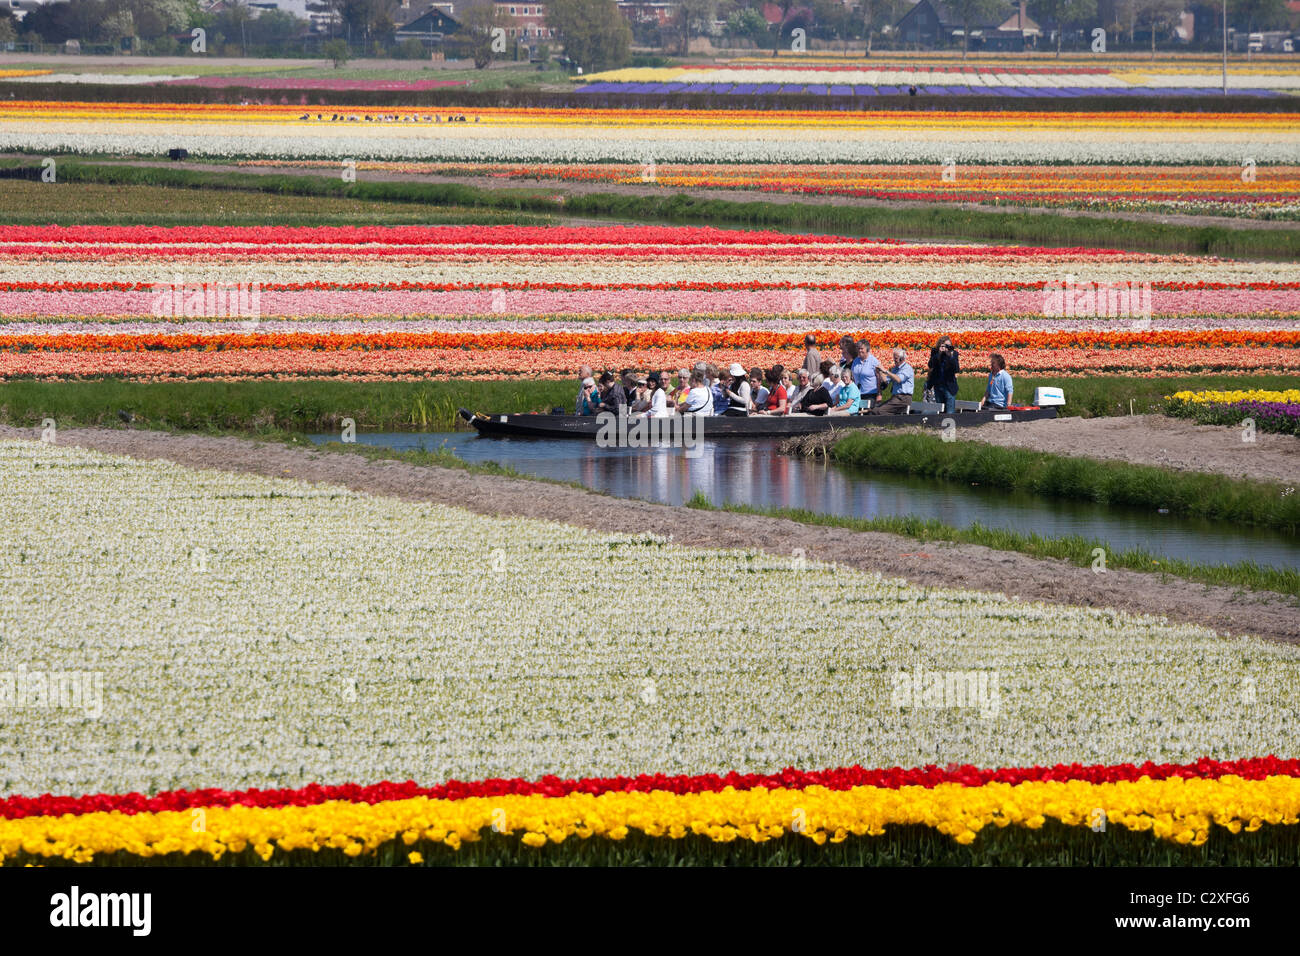 Besucher machen Sie einen Ausflug durch die blühenden Tulpenfelder durch angetriebene Elektroboot am Keukenhof Blumengarten in Lisse, Niederlande. Stockfoto